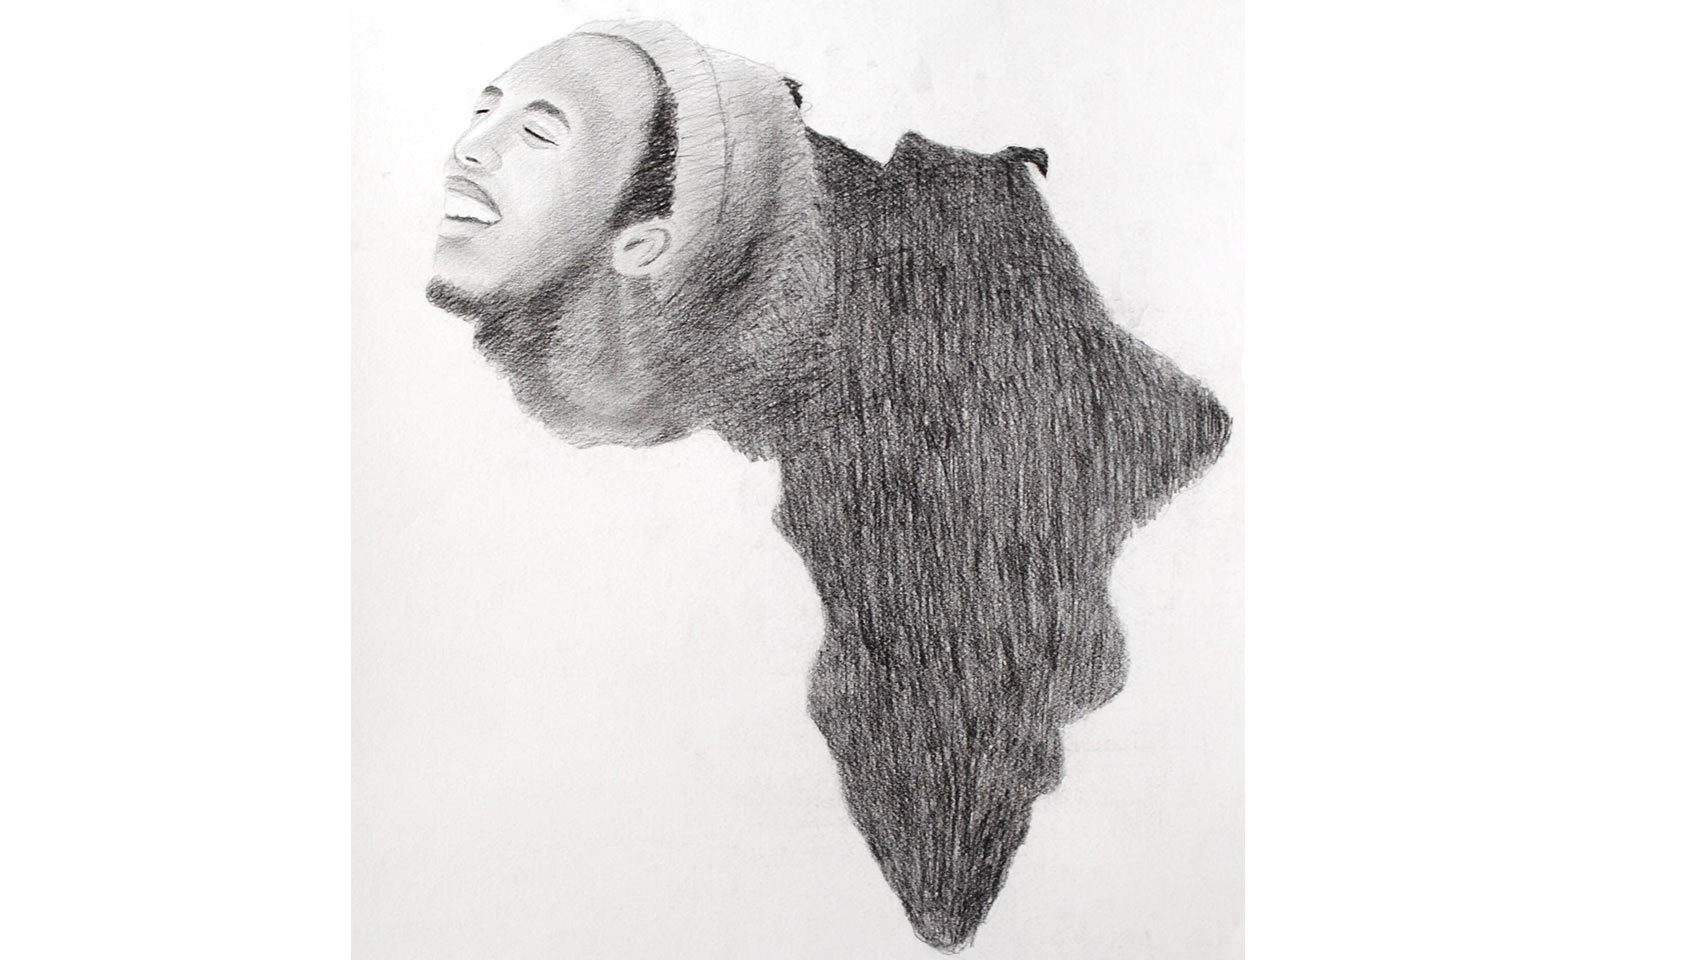 La esperanza. El continente africano pueda exportar grandes personalidades y demostrar su arte.